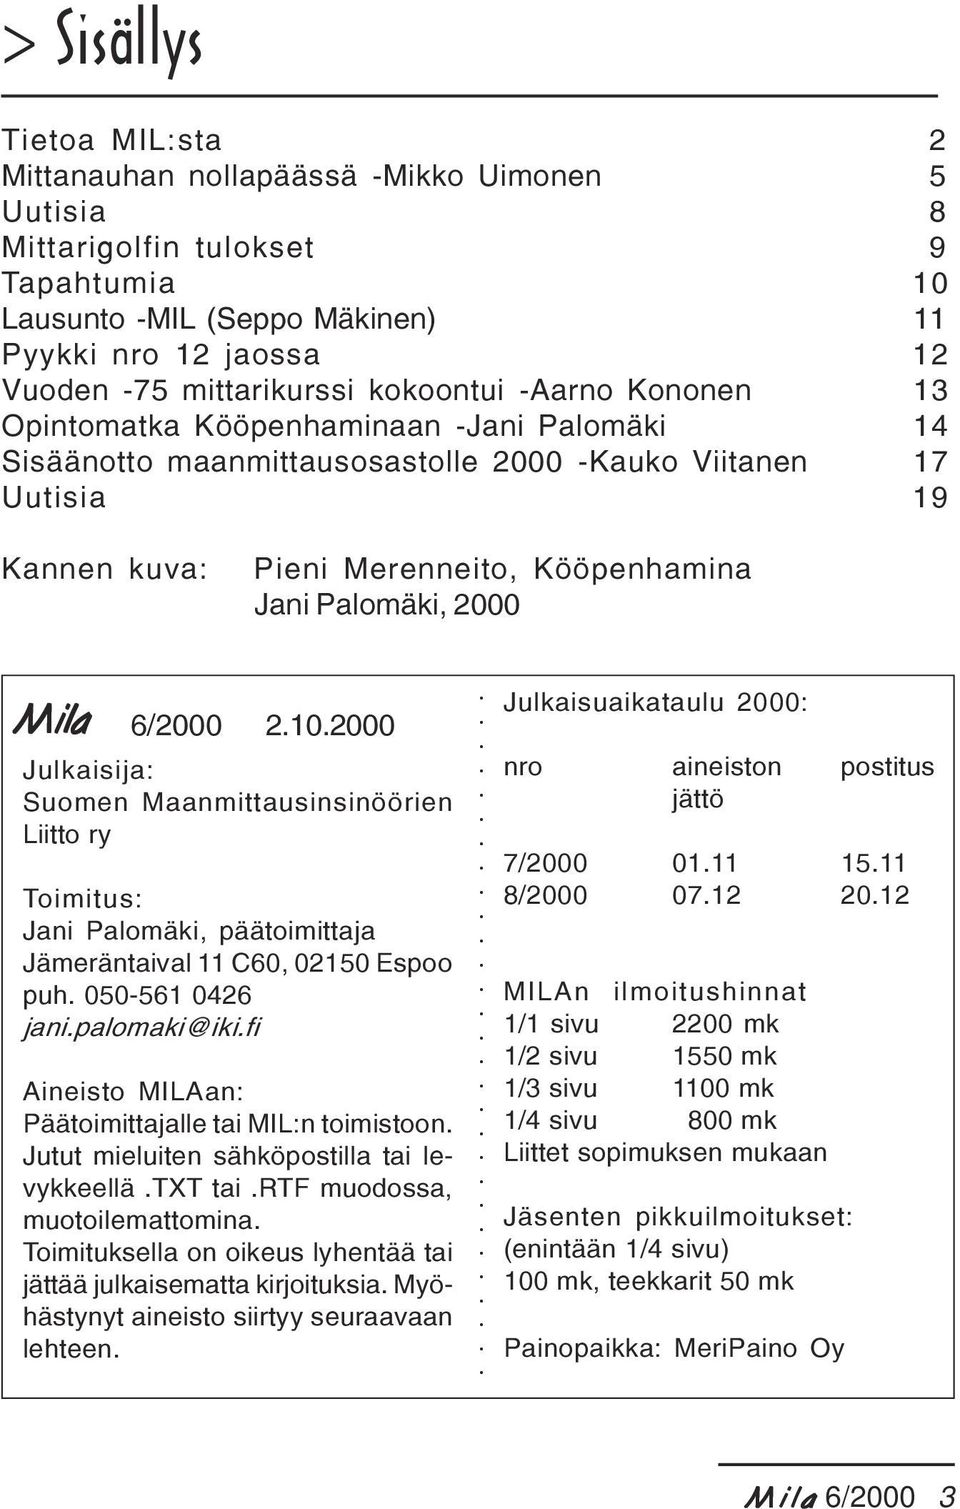 2000 Mila Mila 6/2000 2.10.2000 Julkaisija: Suomen Maanmittausinsinöörien Liitto ry Toimitus: Jani Palomäki, päätoimittaja Jämeräntaival 11 C60, 02150 Espoo puh. 050-561 0426 jani.palomaki@iki.